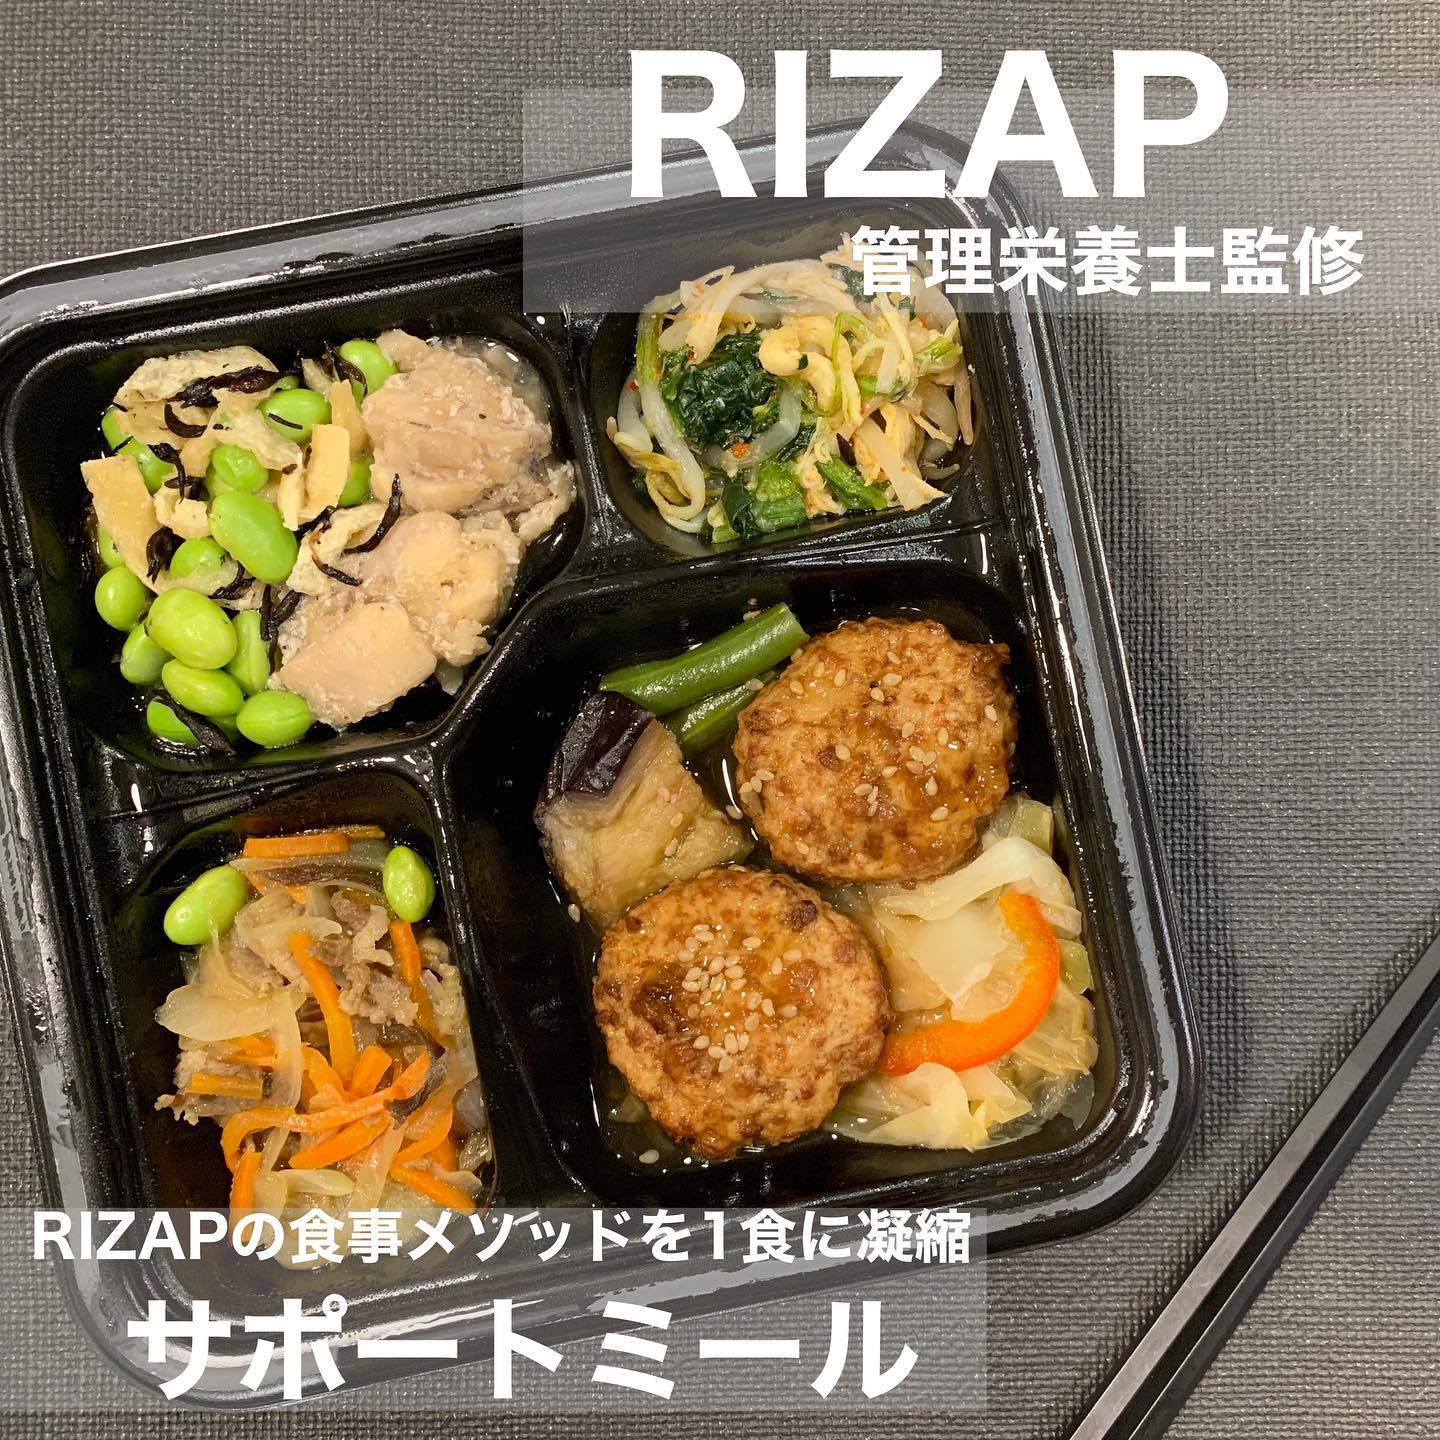 口コミ投稿：RIZAP管理栄養士監修のサポートミールを2週間分食べてみたのでご紹介💪——————☑︎一食あ…